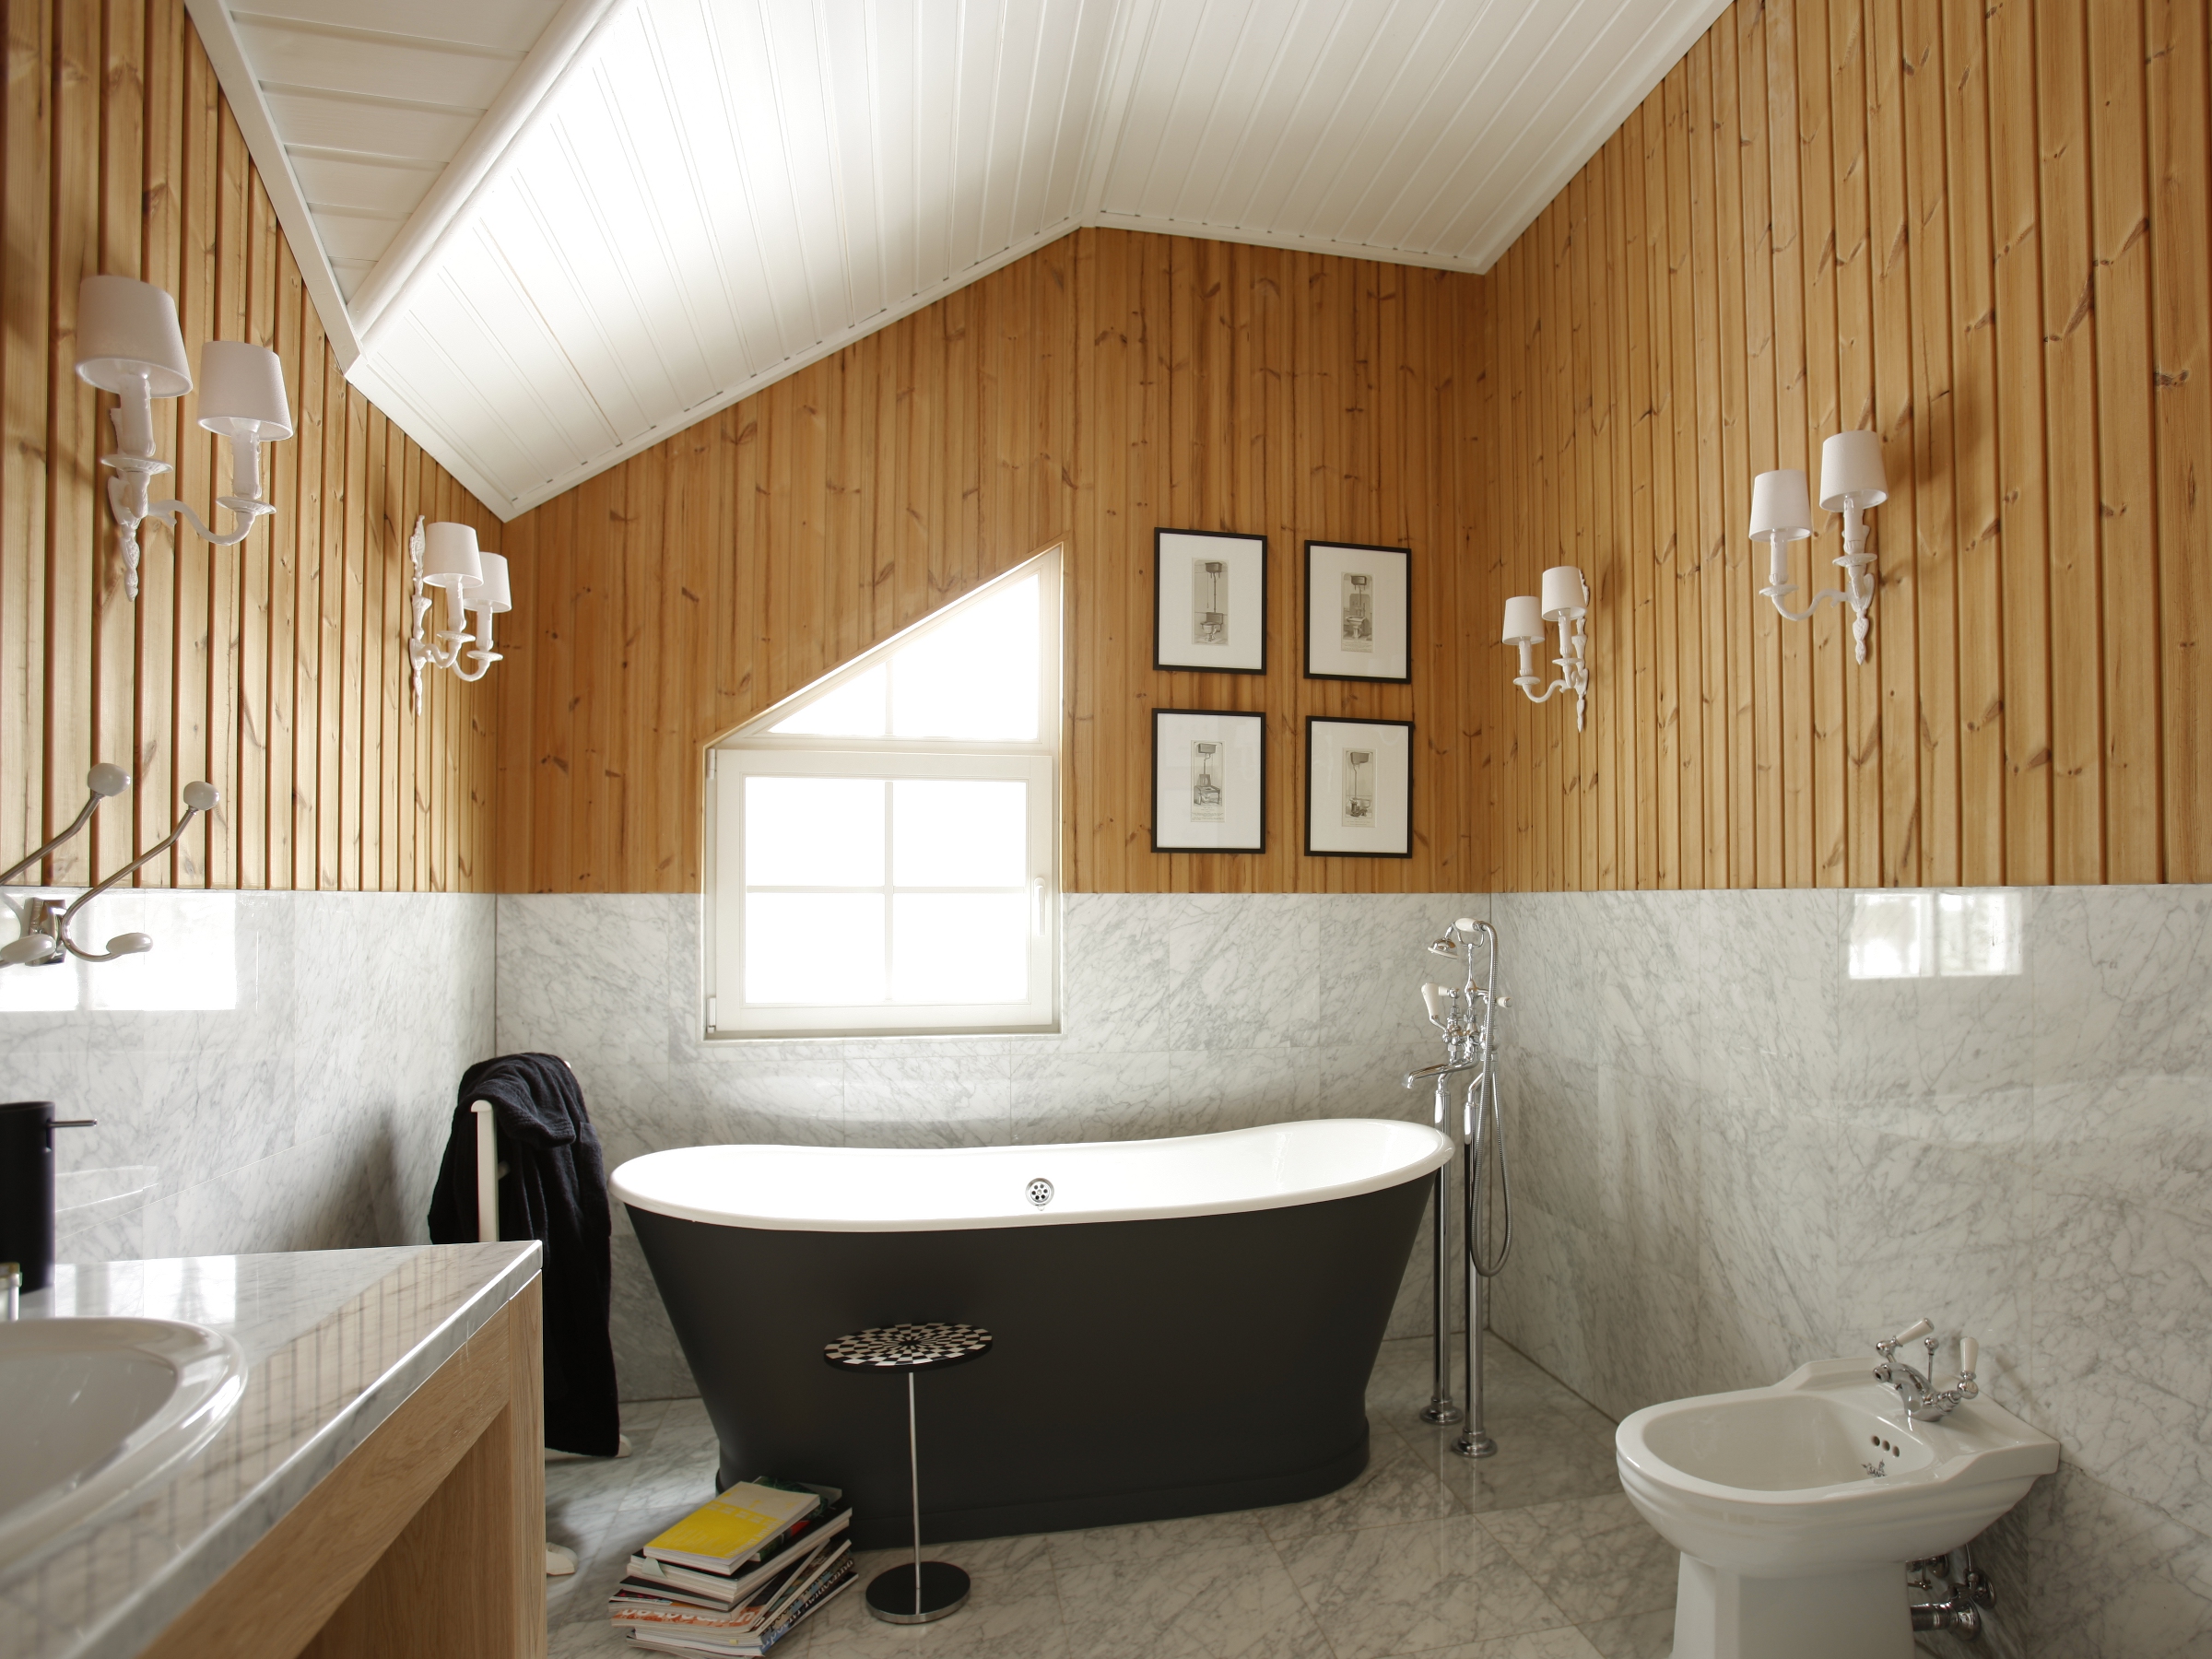 Отделка деревянной комнаты. Ванная комната обшитая вагонкой. Ванная комната отделанная вагонкой. Ванная отделанная вагонкой деревянной. Комбинированная отделка ванной.